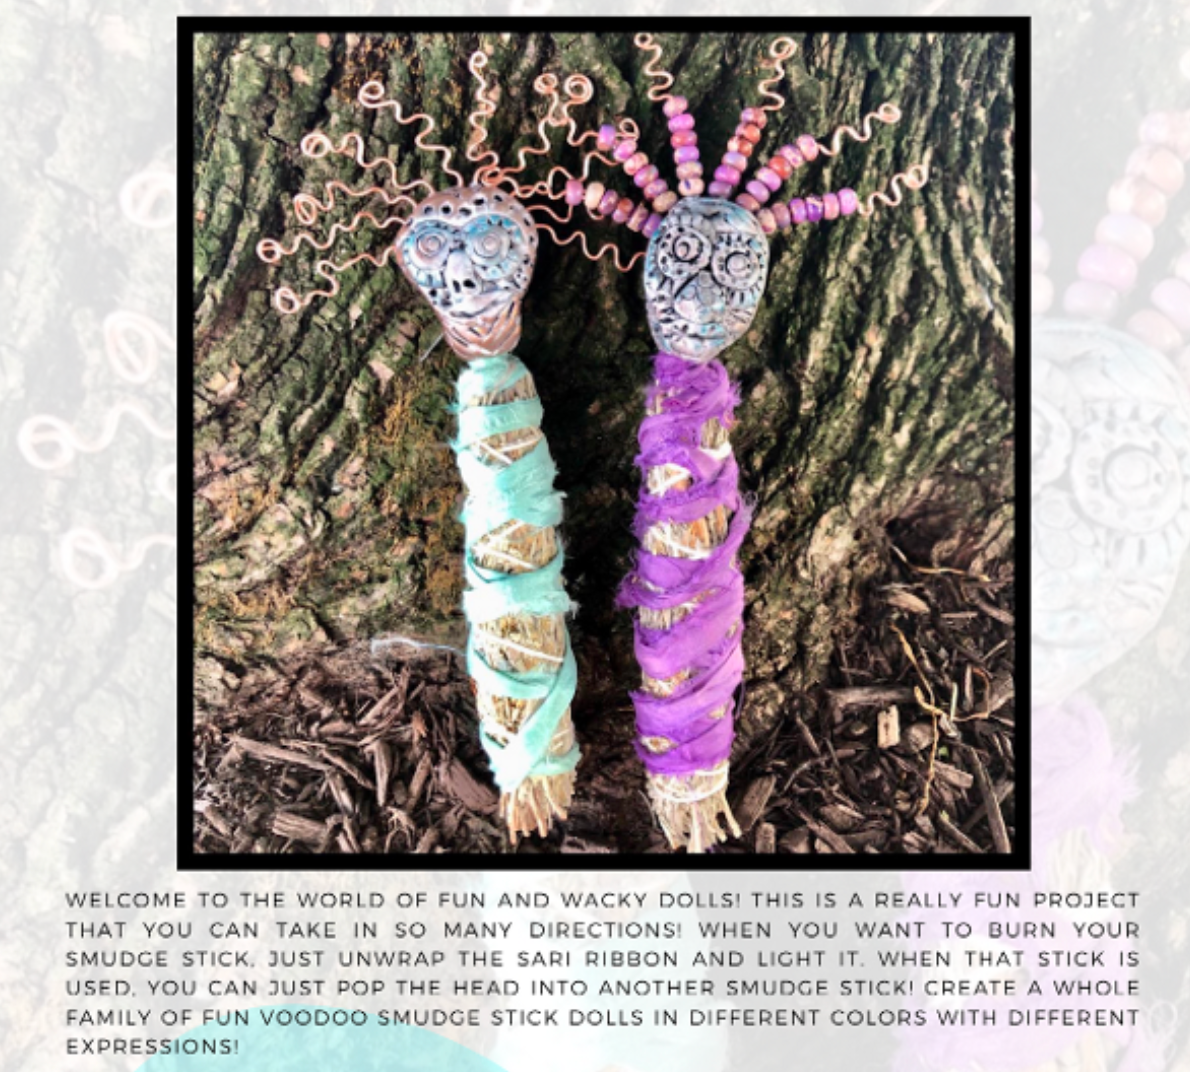 Lisa Renner Fabulous Fish Beads Tutorial Digital Download PDF